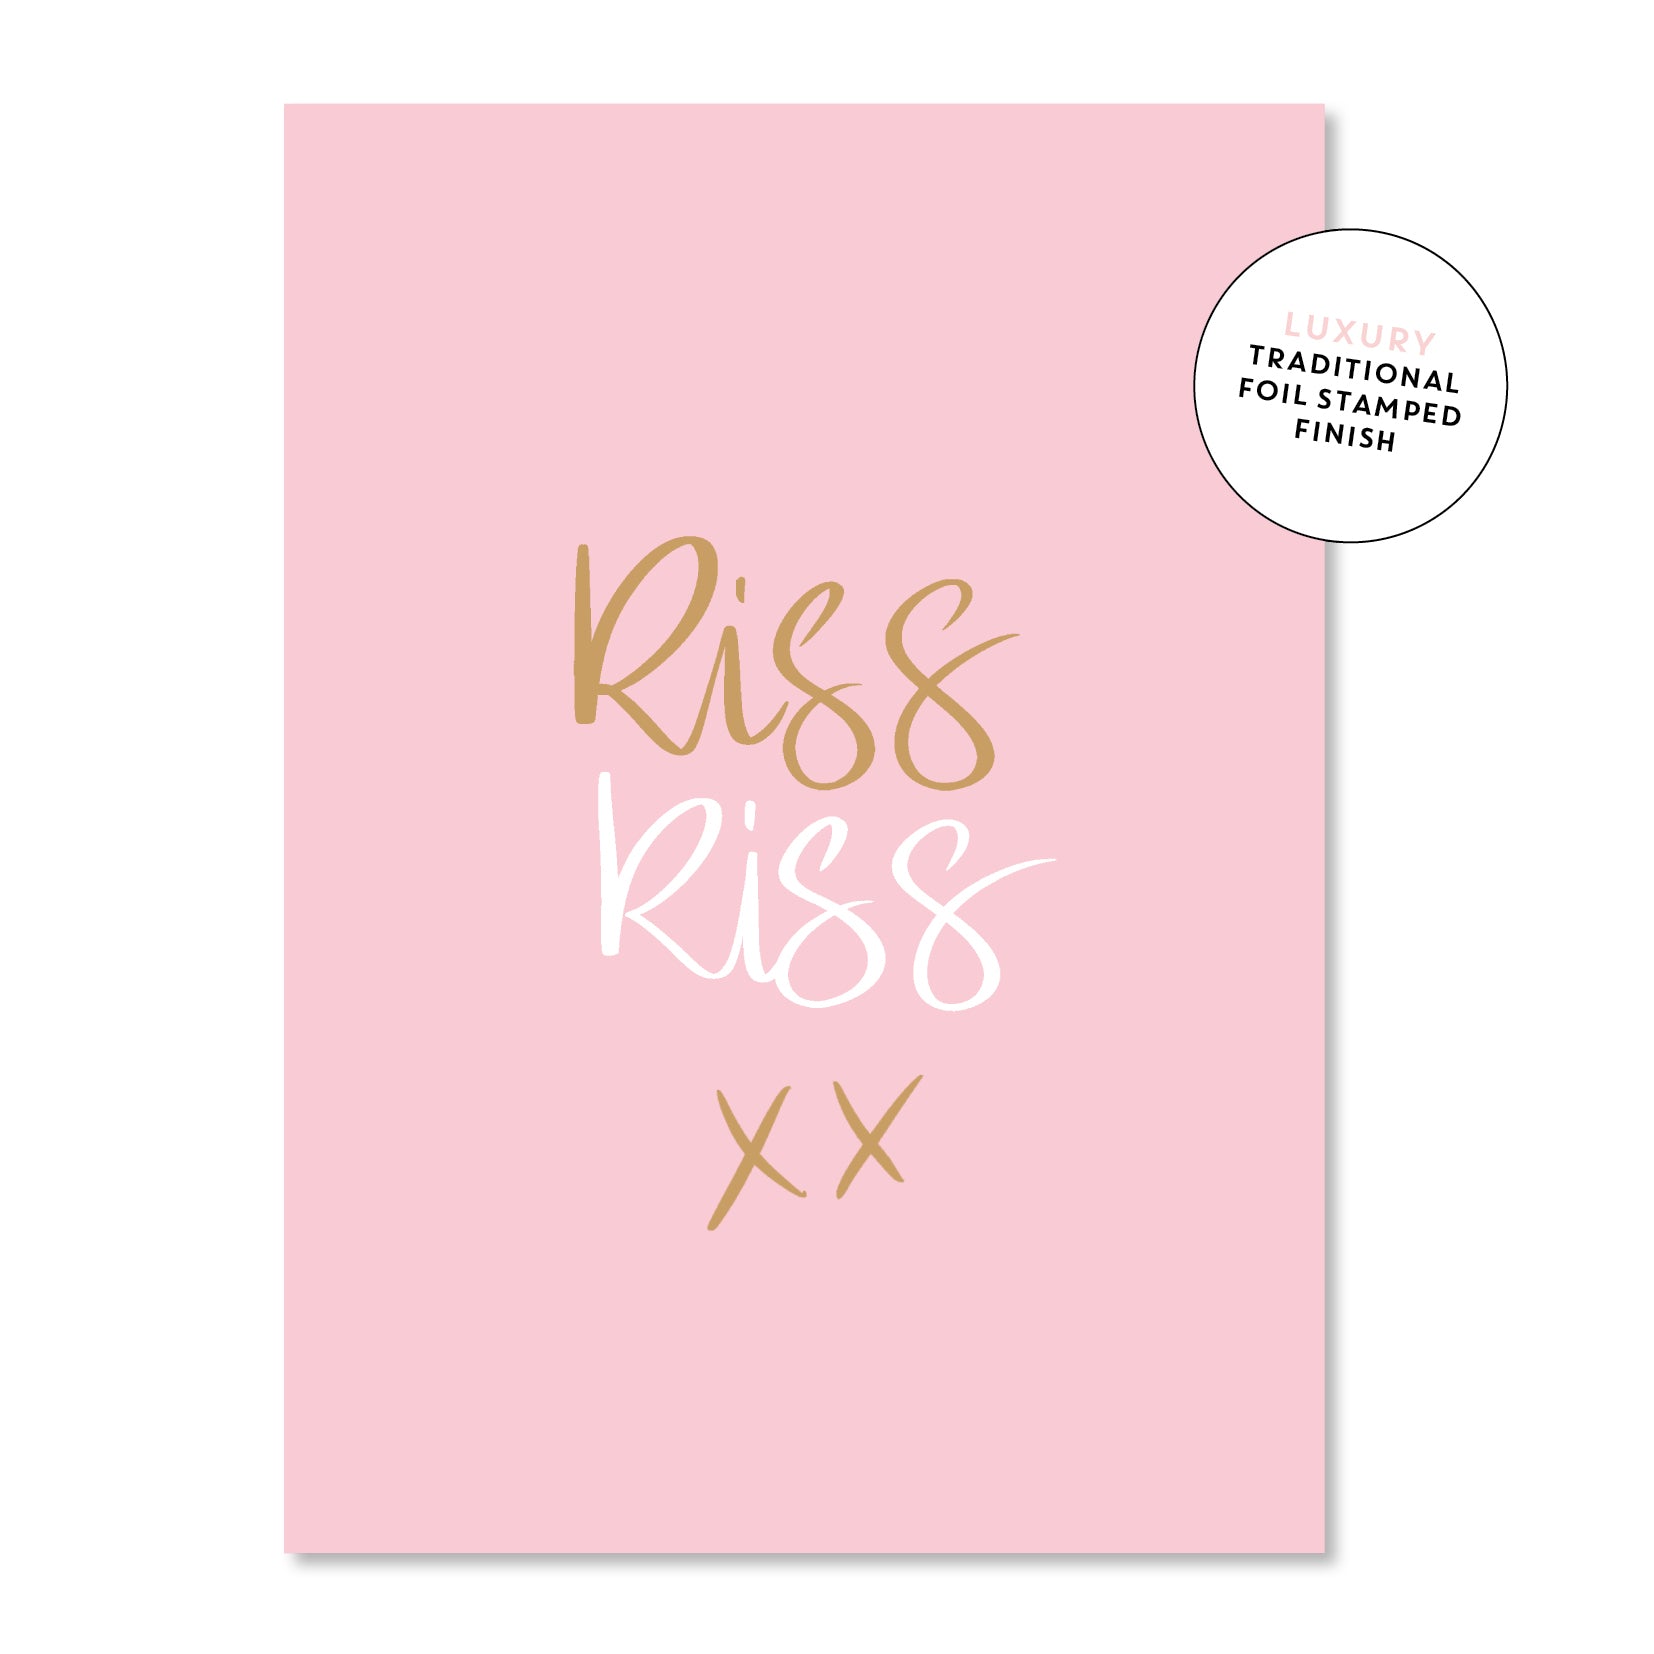 Kiss Kiss xx